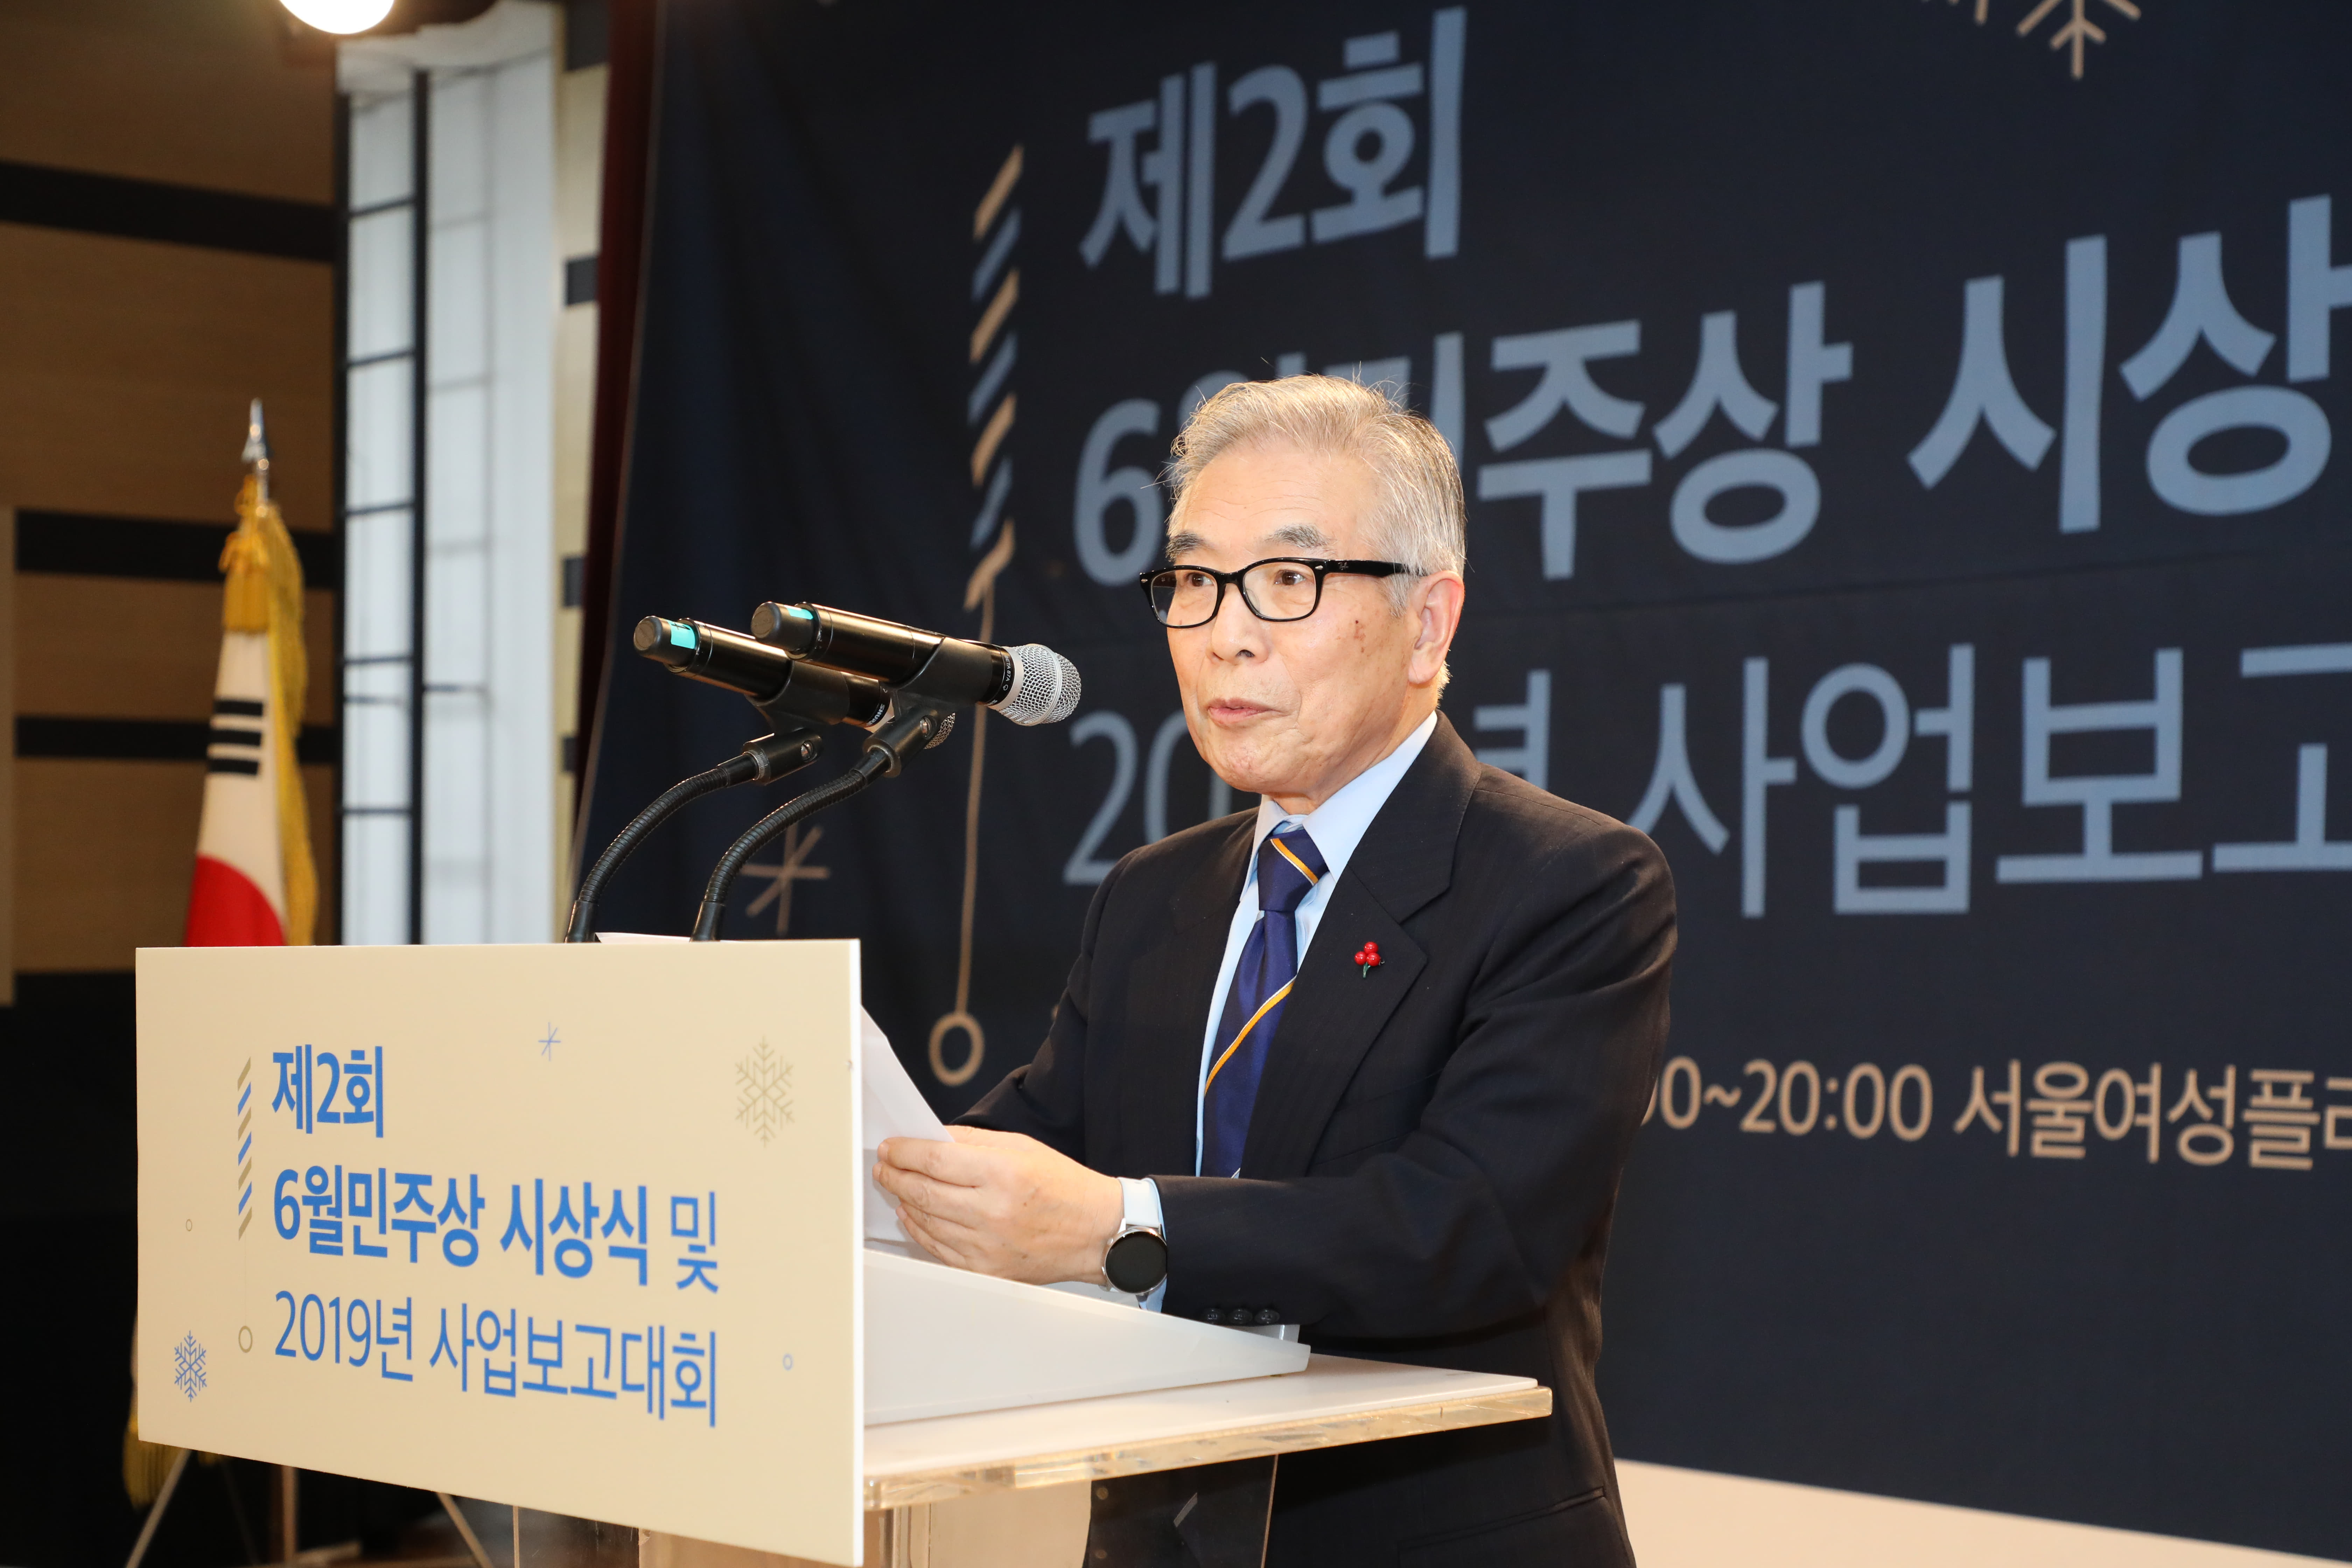 심사평을 이야기하는 김상근 목사/KBS 이사